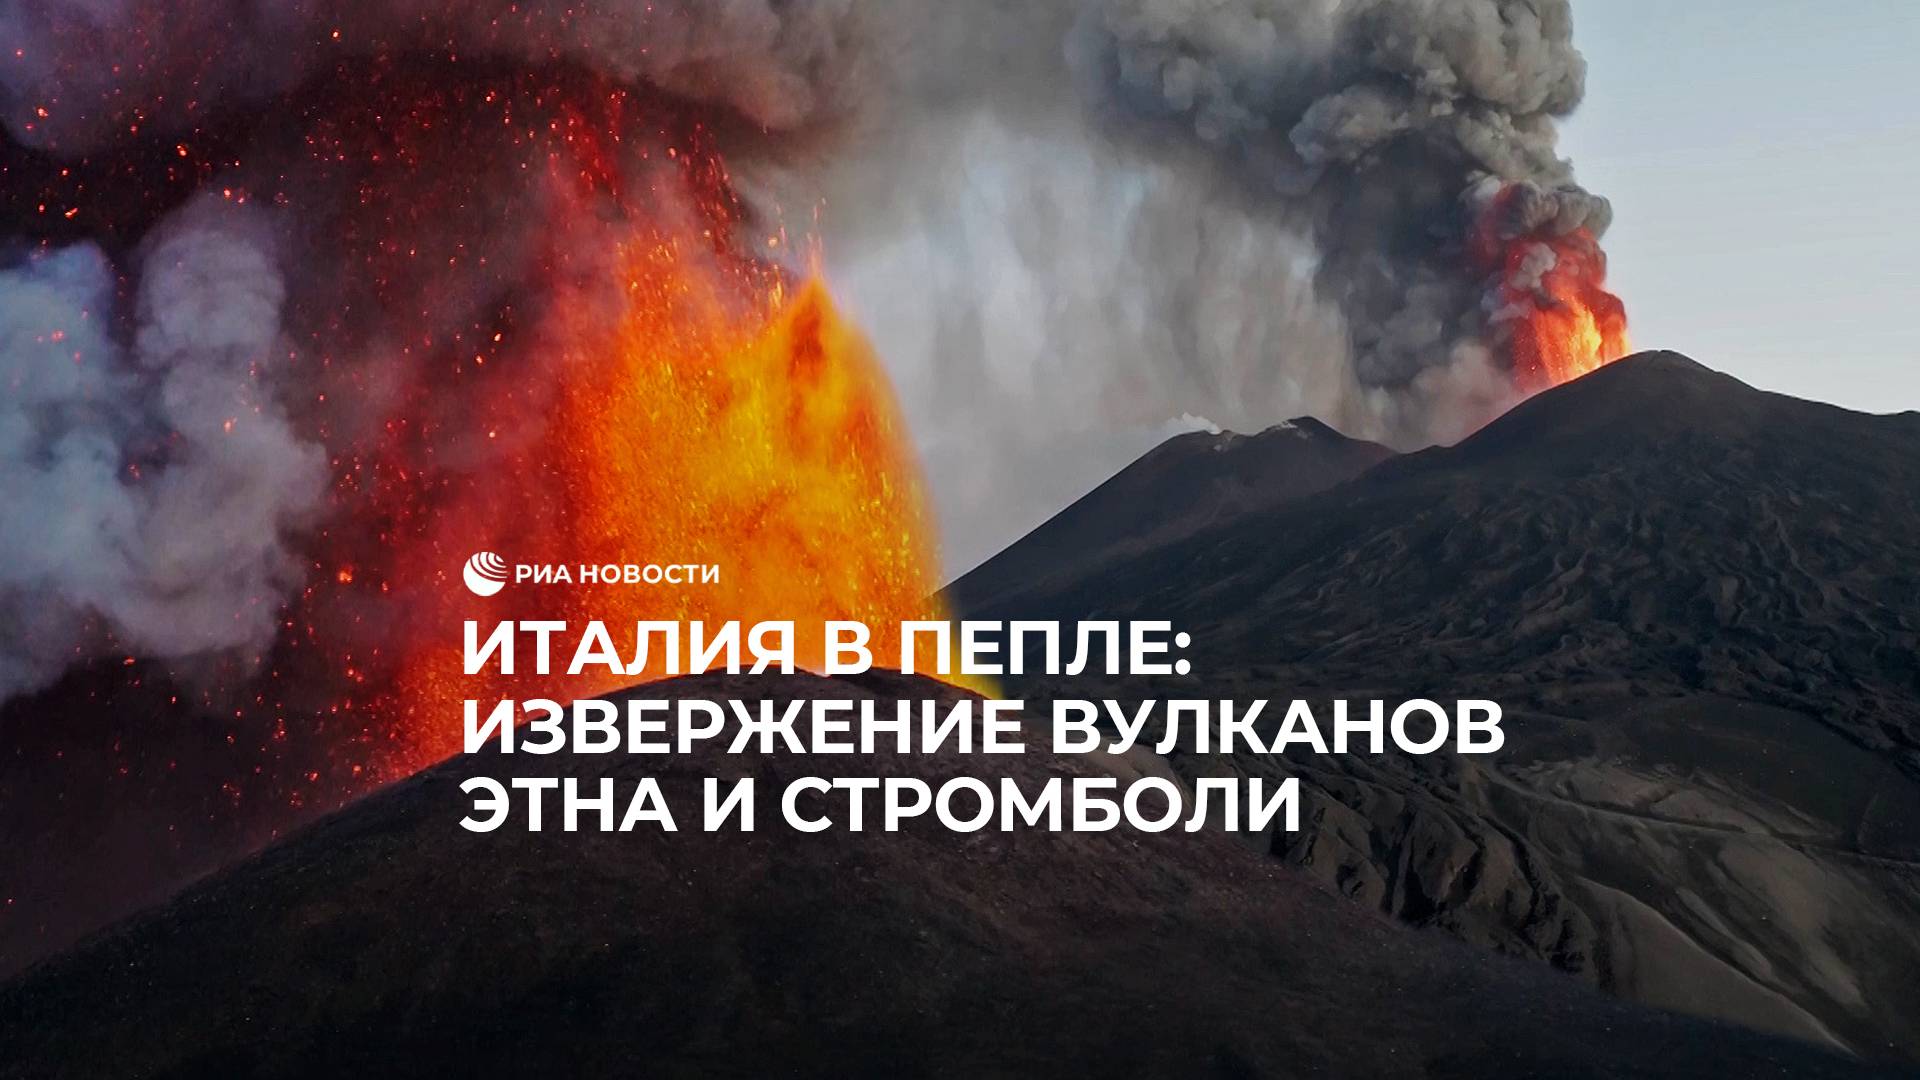 Италия в пепле: извержение вулканов Этна и Стромболи